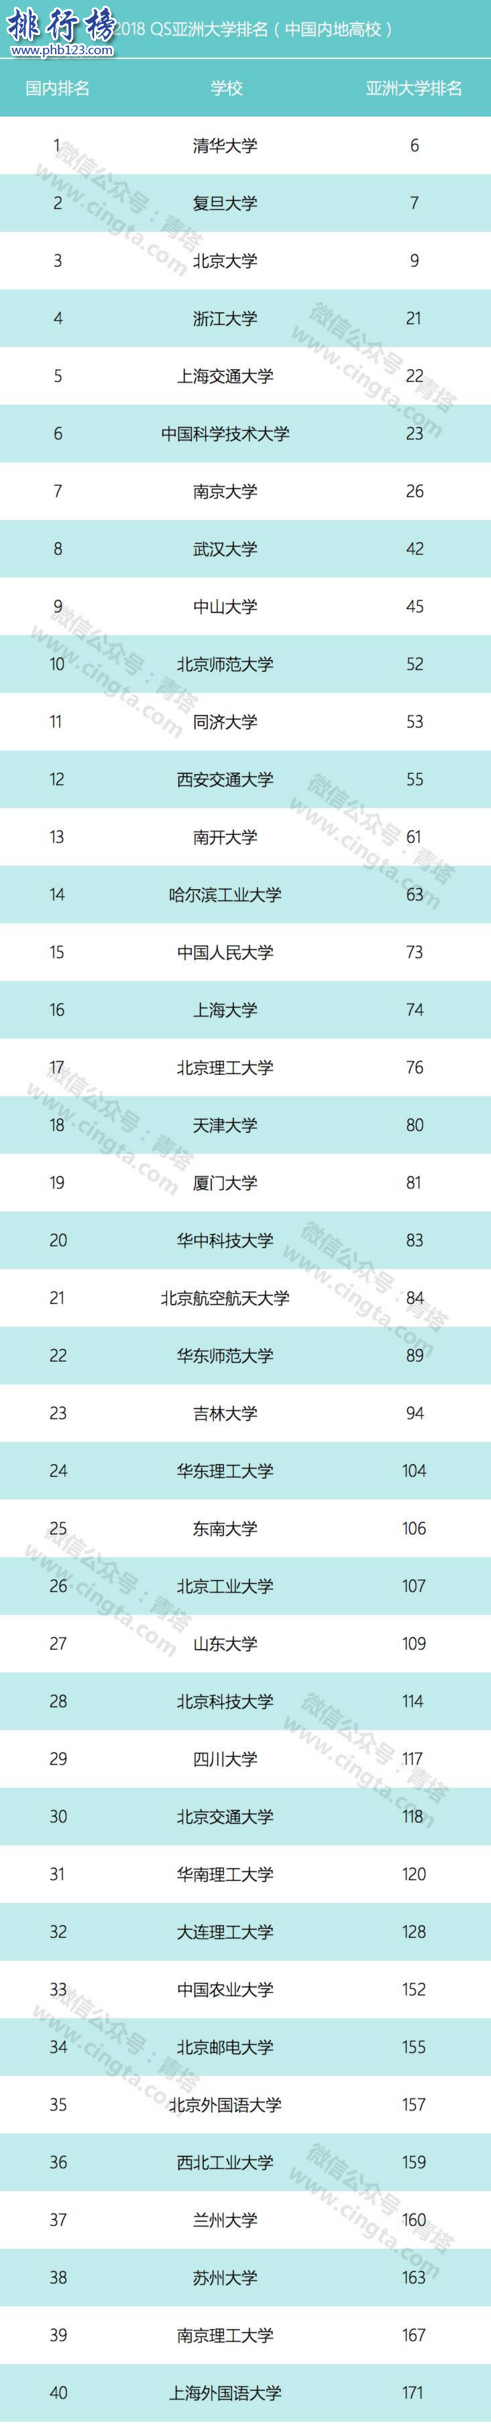 2018QS亞洲大學排名:南洋理工登頂,清華第6北大第9